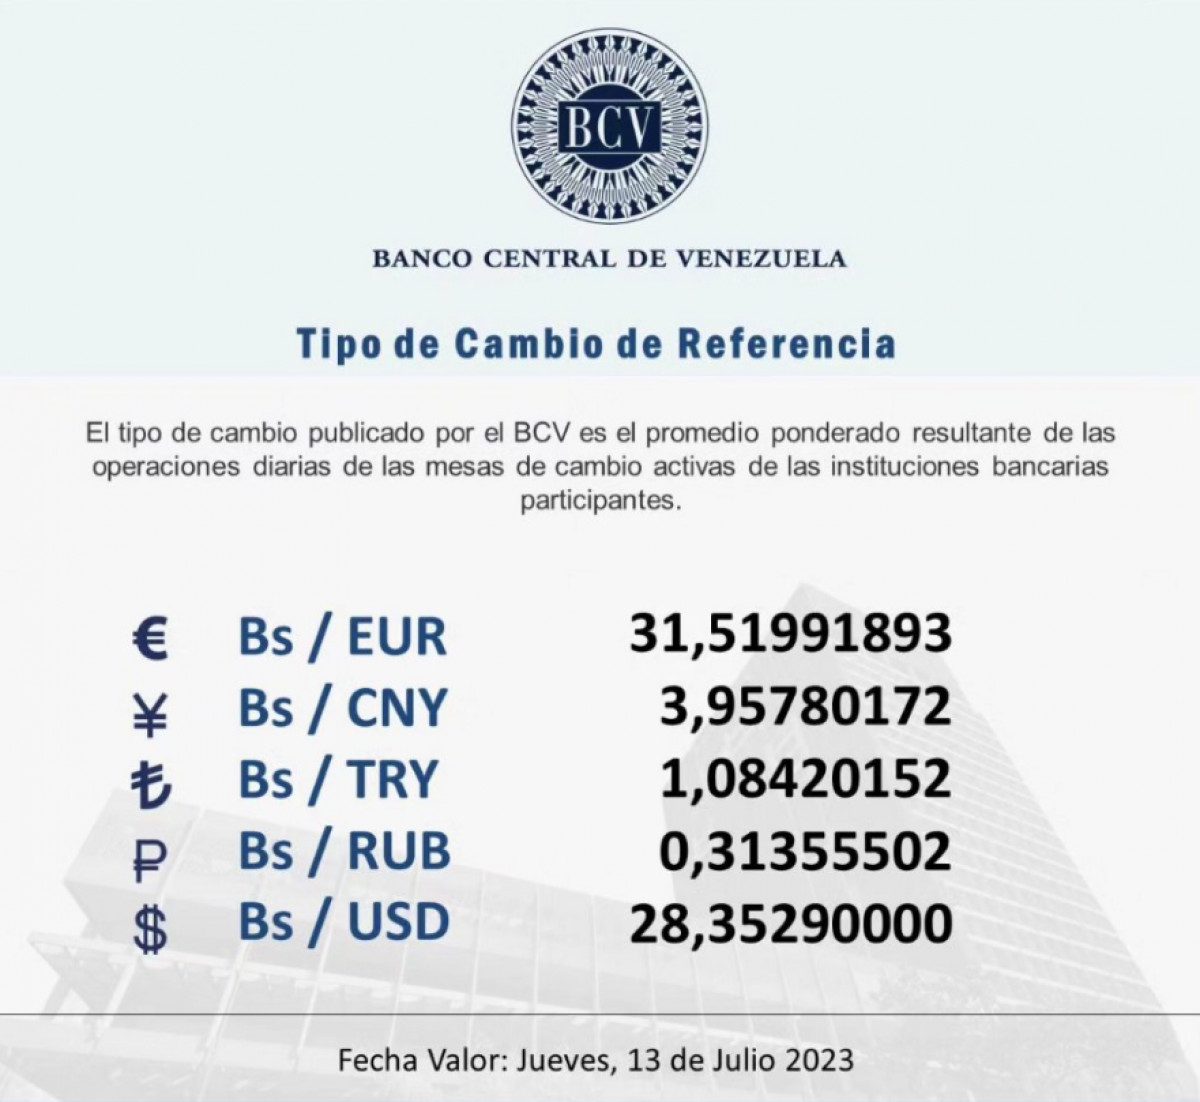 dolartoday en venezuela precio del dolar este jueves 13 de julio de 2023 laverdaddemonagas.com bcv